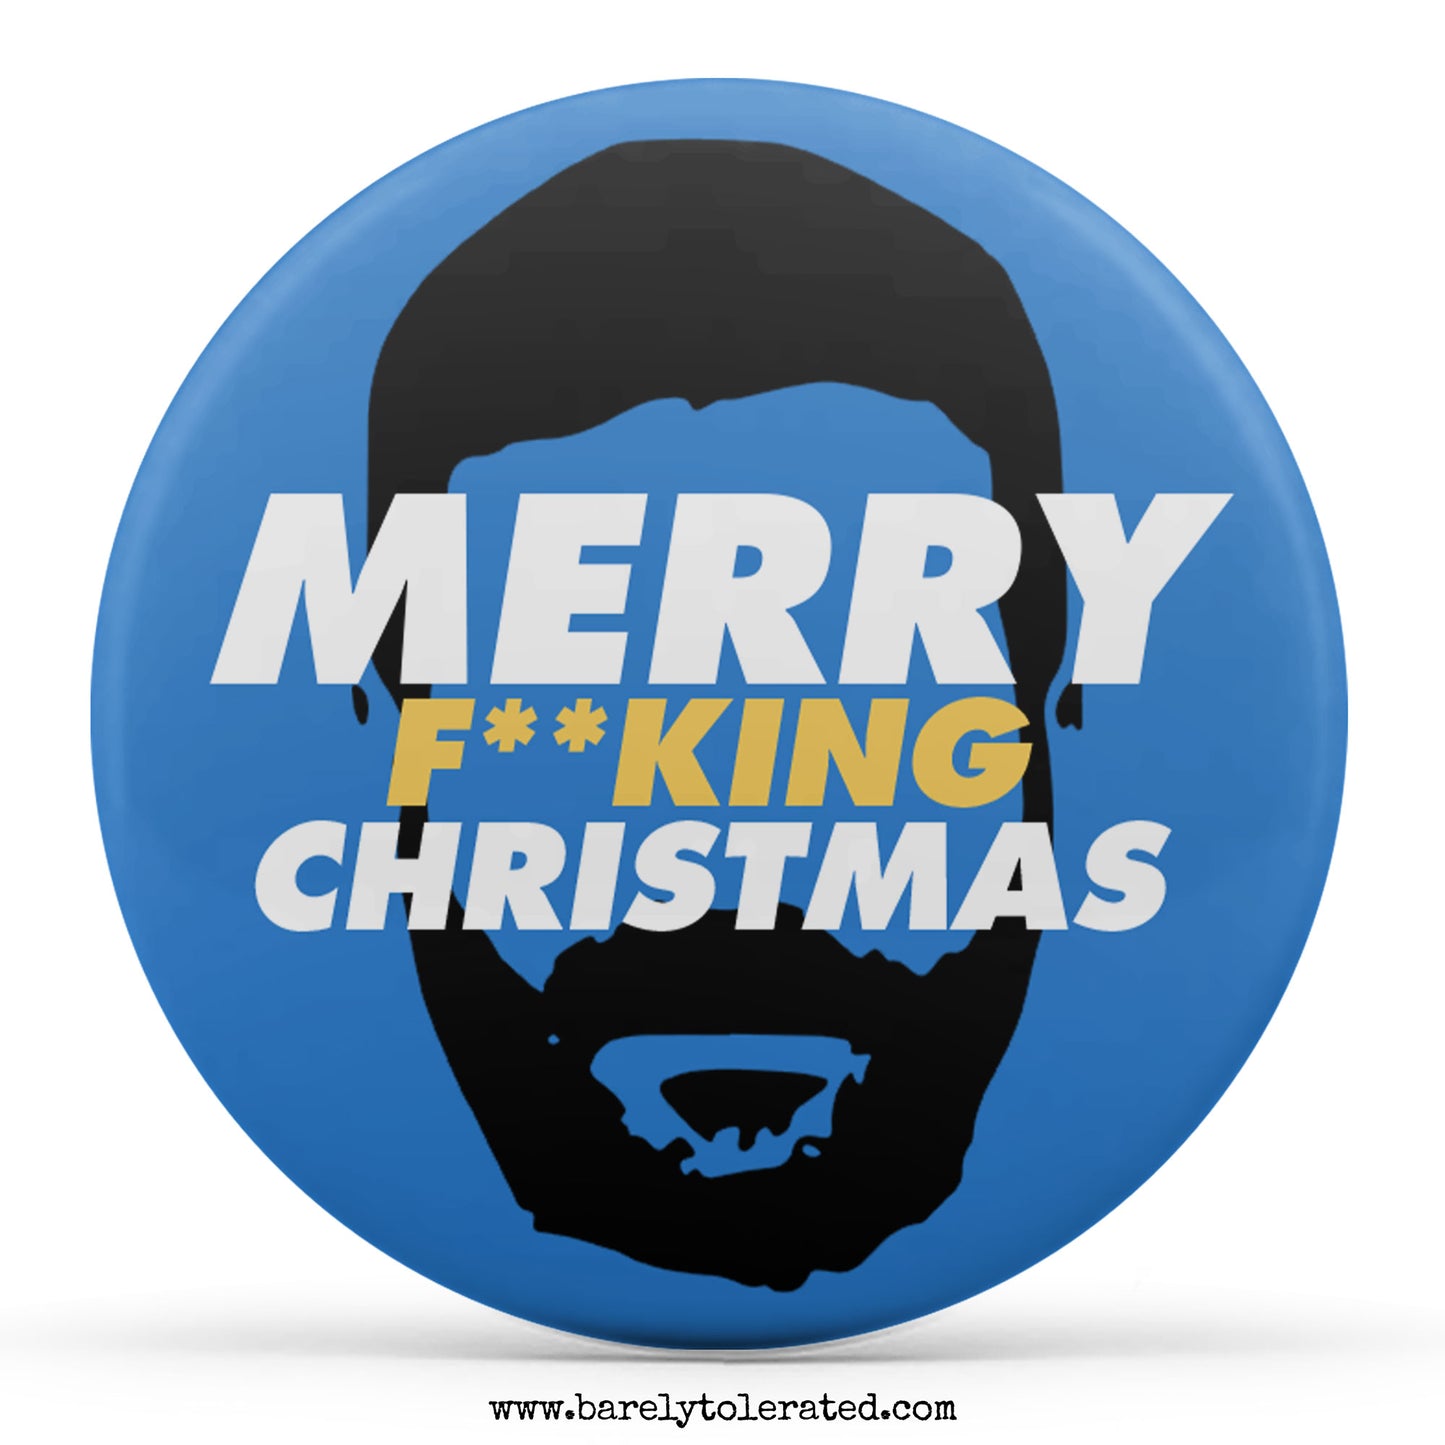 Merry F**king Christmas